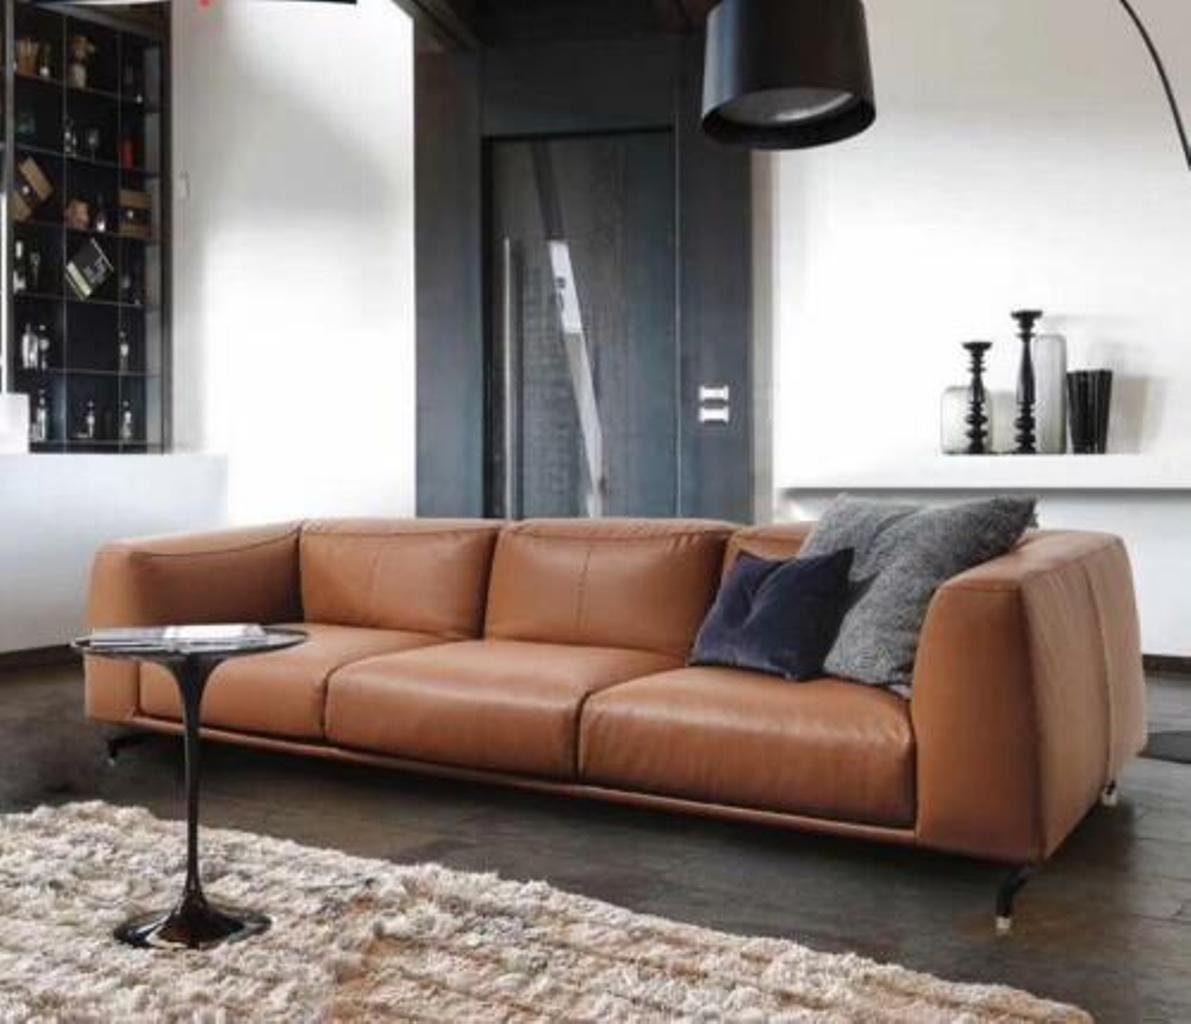 JVmoebel 4-Sitzer, Design XXL Big Sofa Couch Leder Couchen Gelbe 4 Sitzer Polster 255 cm Braun